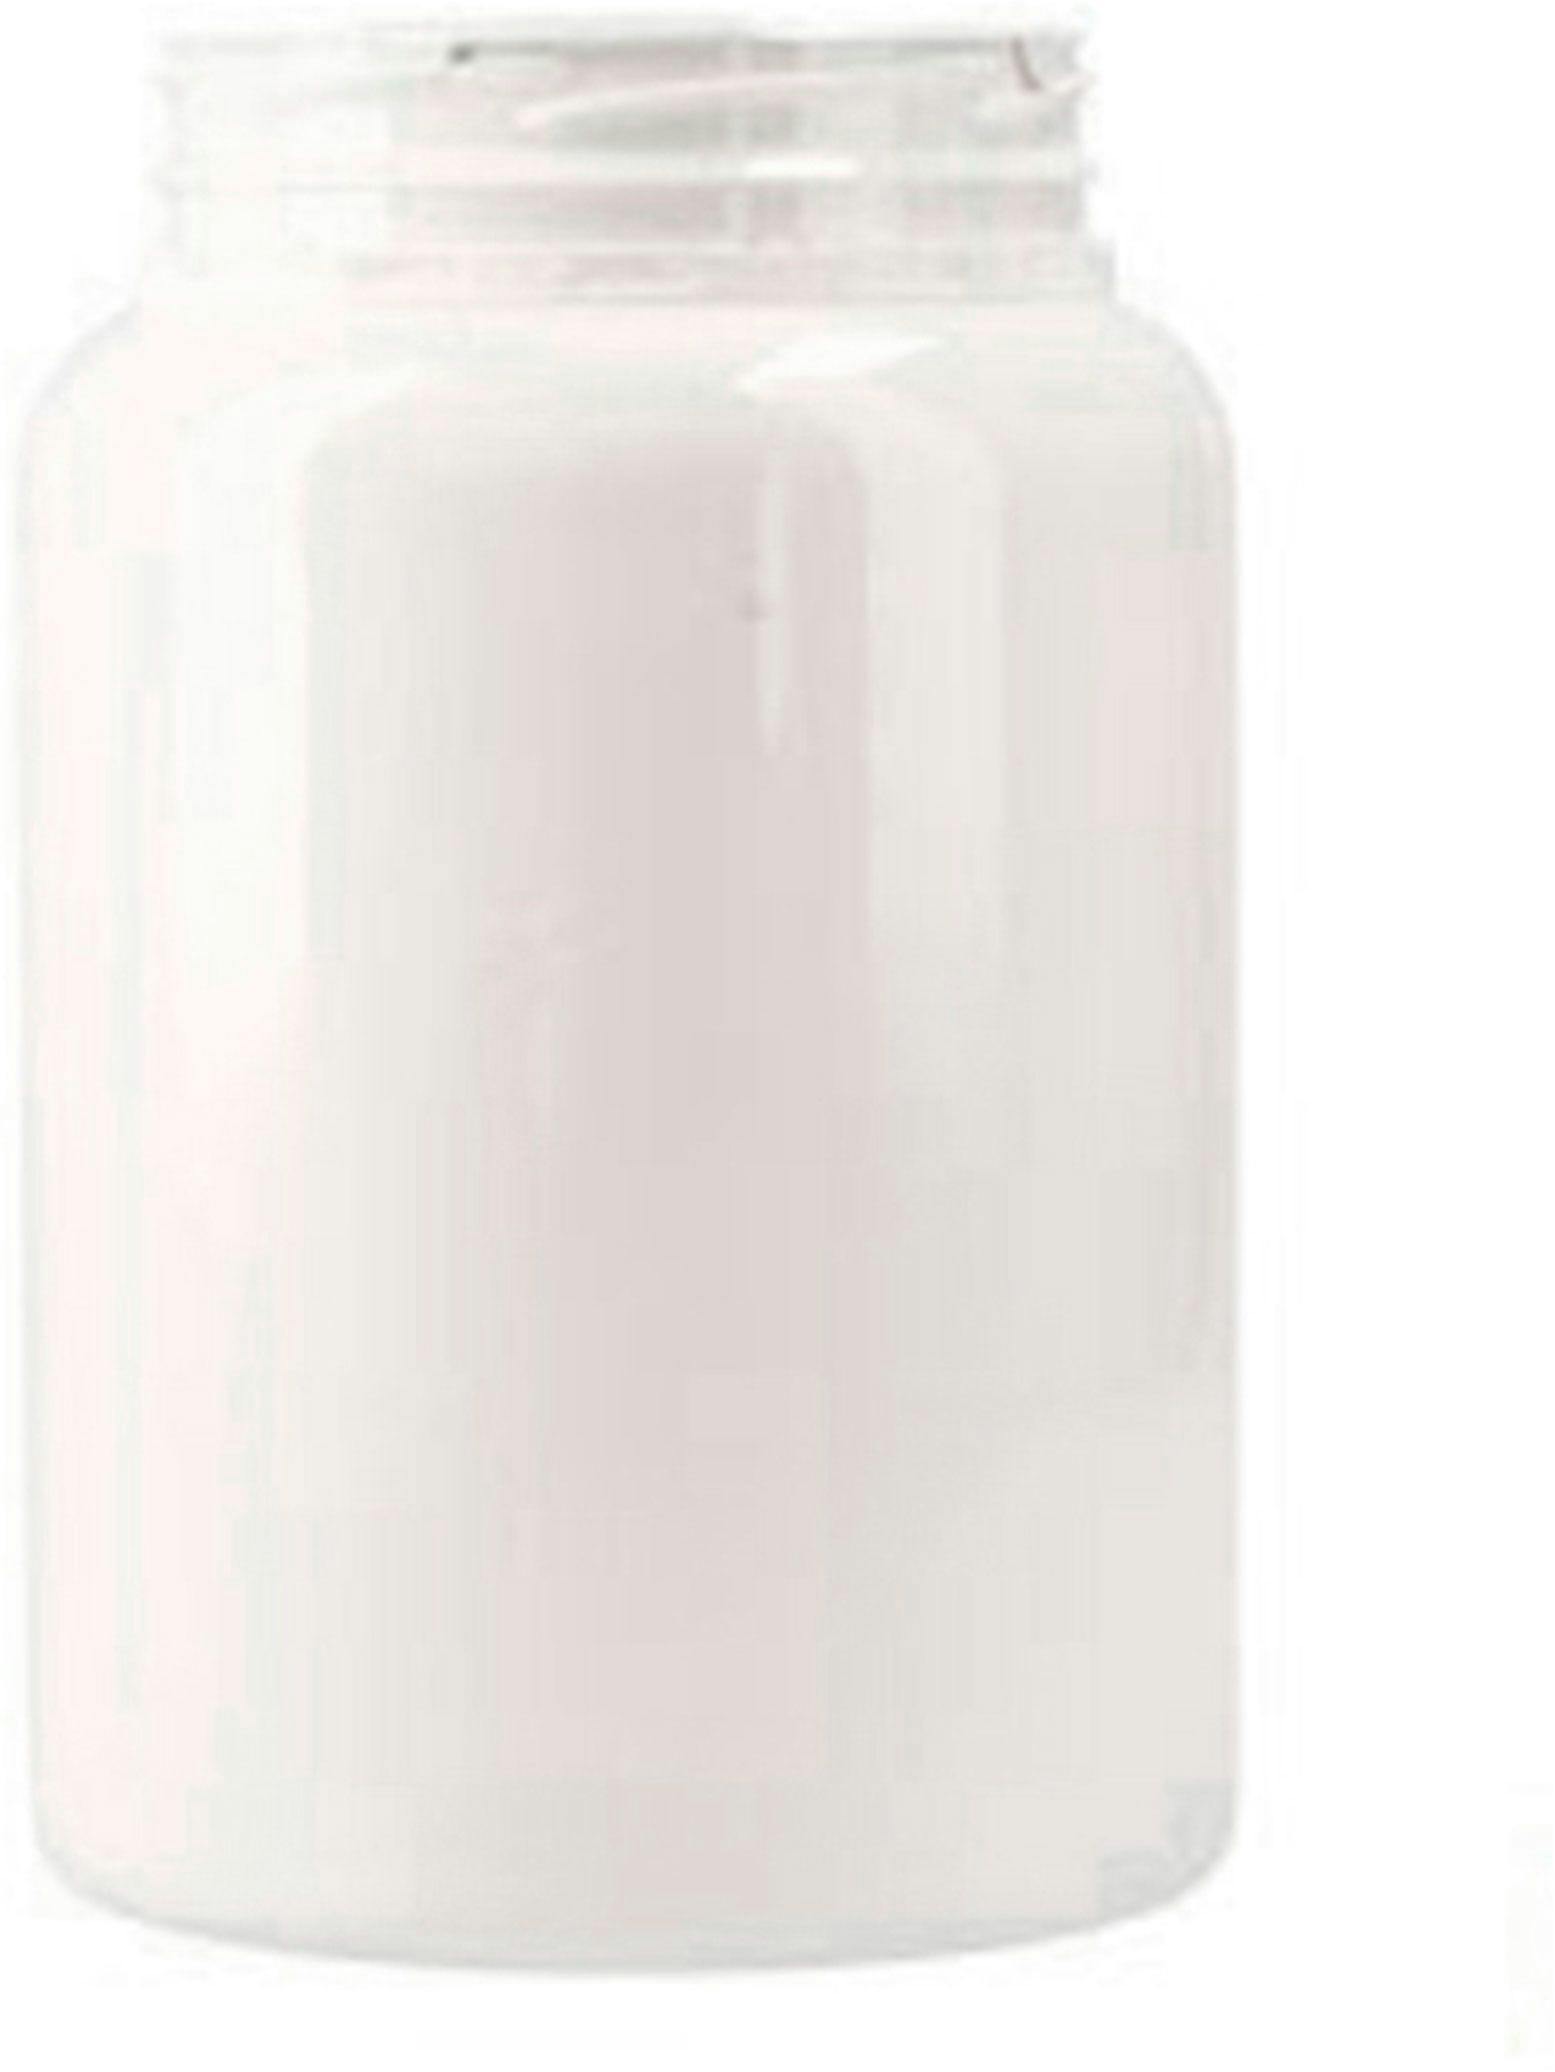 Jar PET 1 liter white  D82